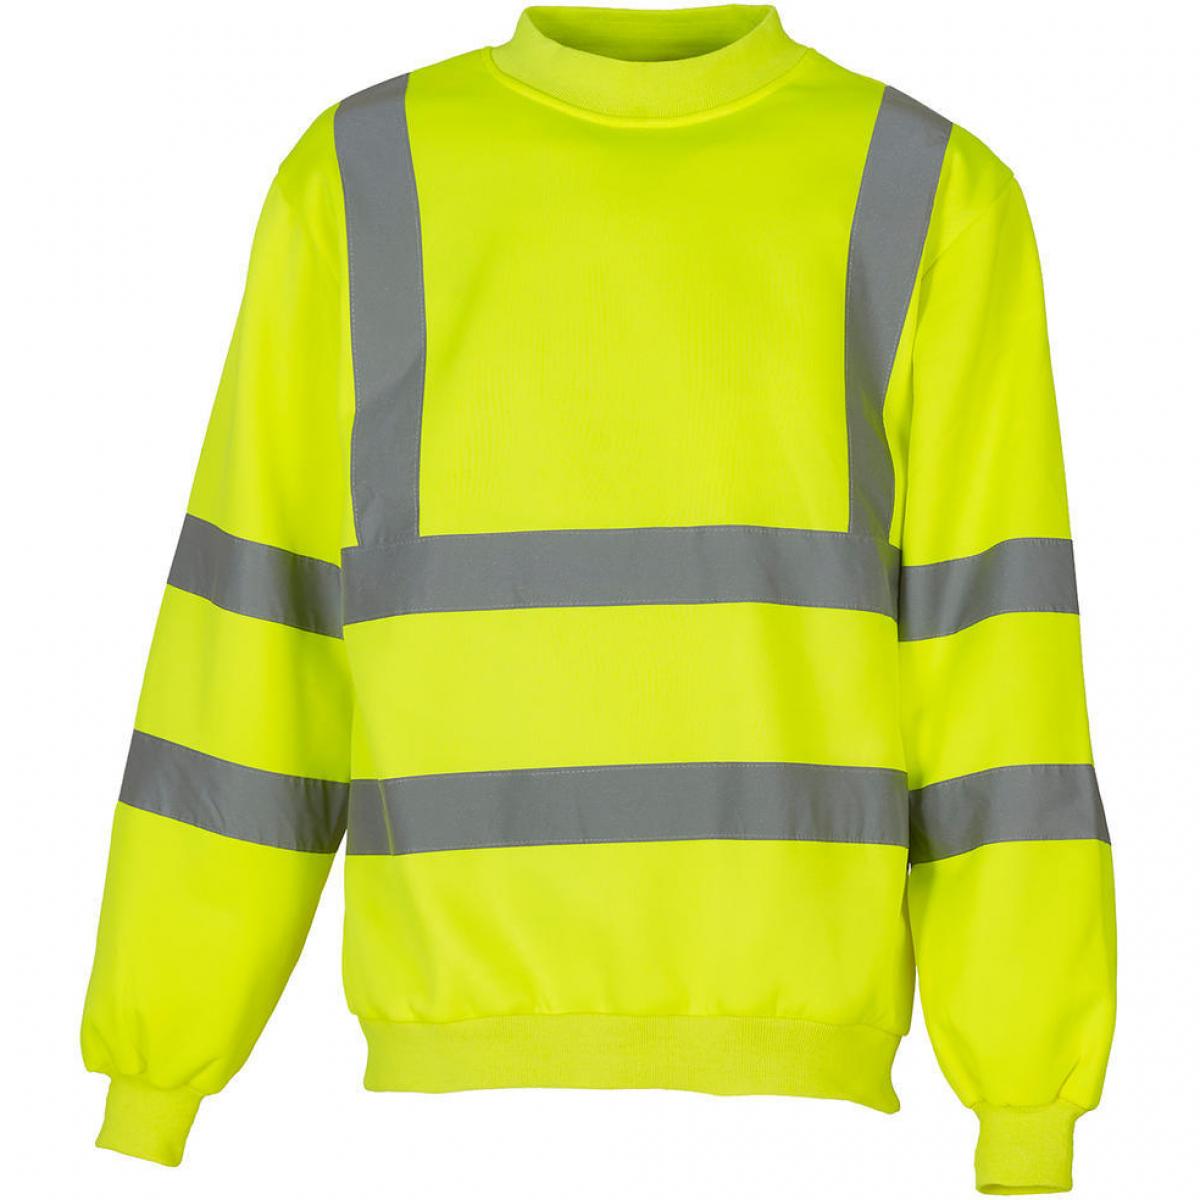 Hersteller: YOKO Herstellernummer: HVJ510 Artikelbezeichnung: Fluo Sweatshirt - HiVis Sicherheitssweatshirt Farbe: Fluo Yellow